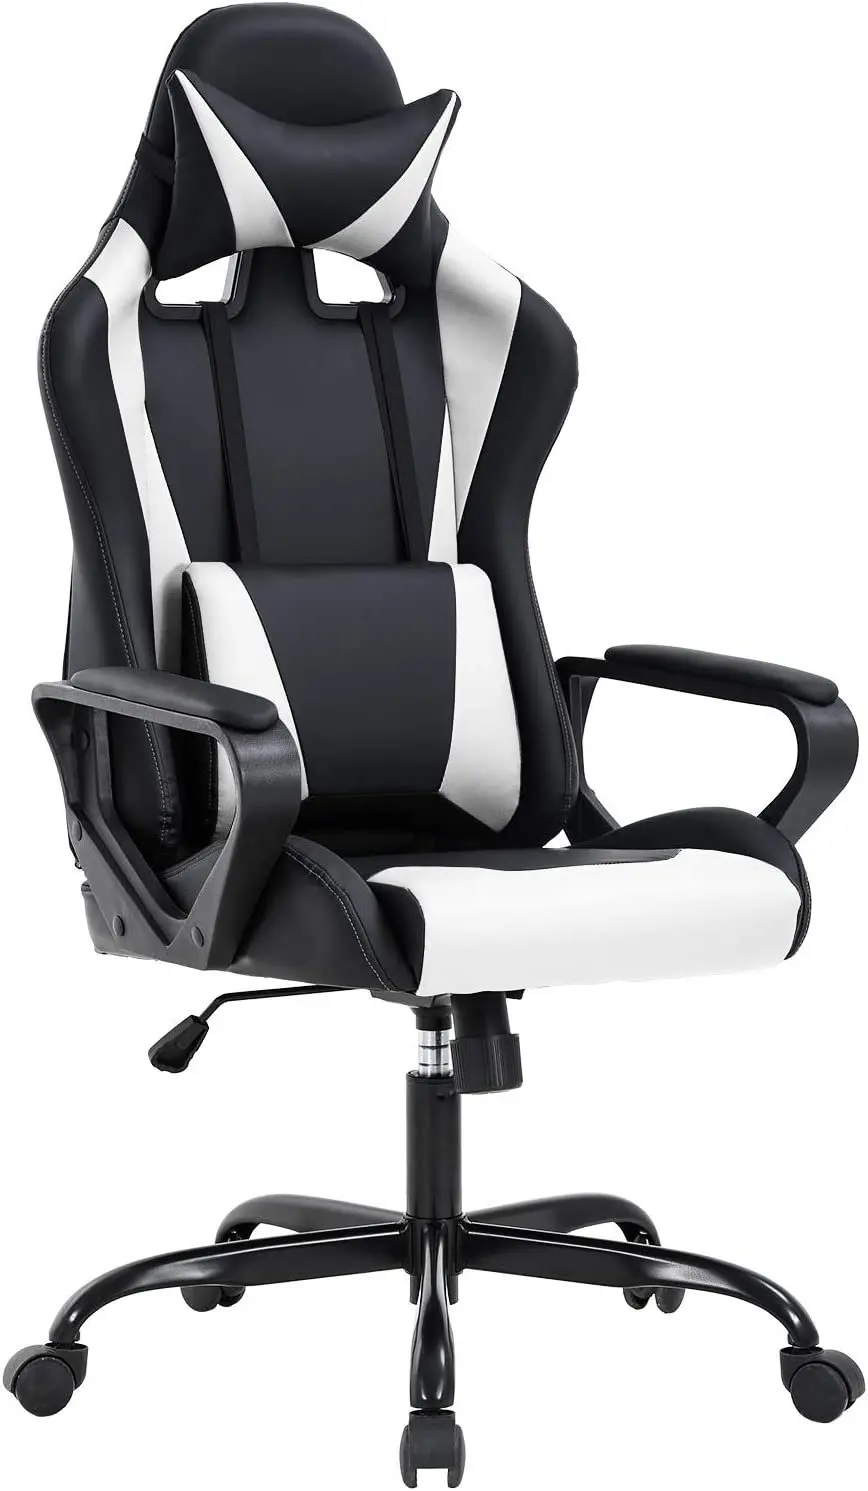 

Кресло для игр POPTOP с высокой спинкой для взрослых, эргономичное офисное кресло для гоночного компьютера, офисное эргономичное кресло для оф...